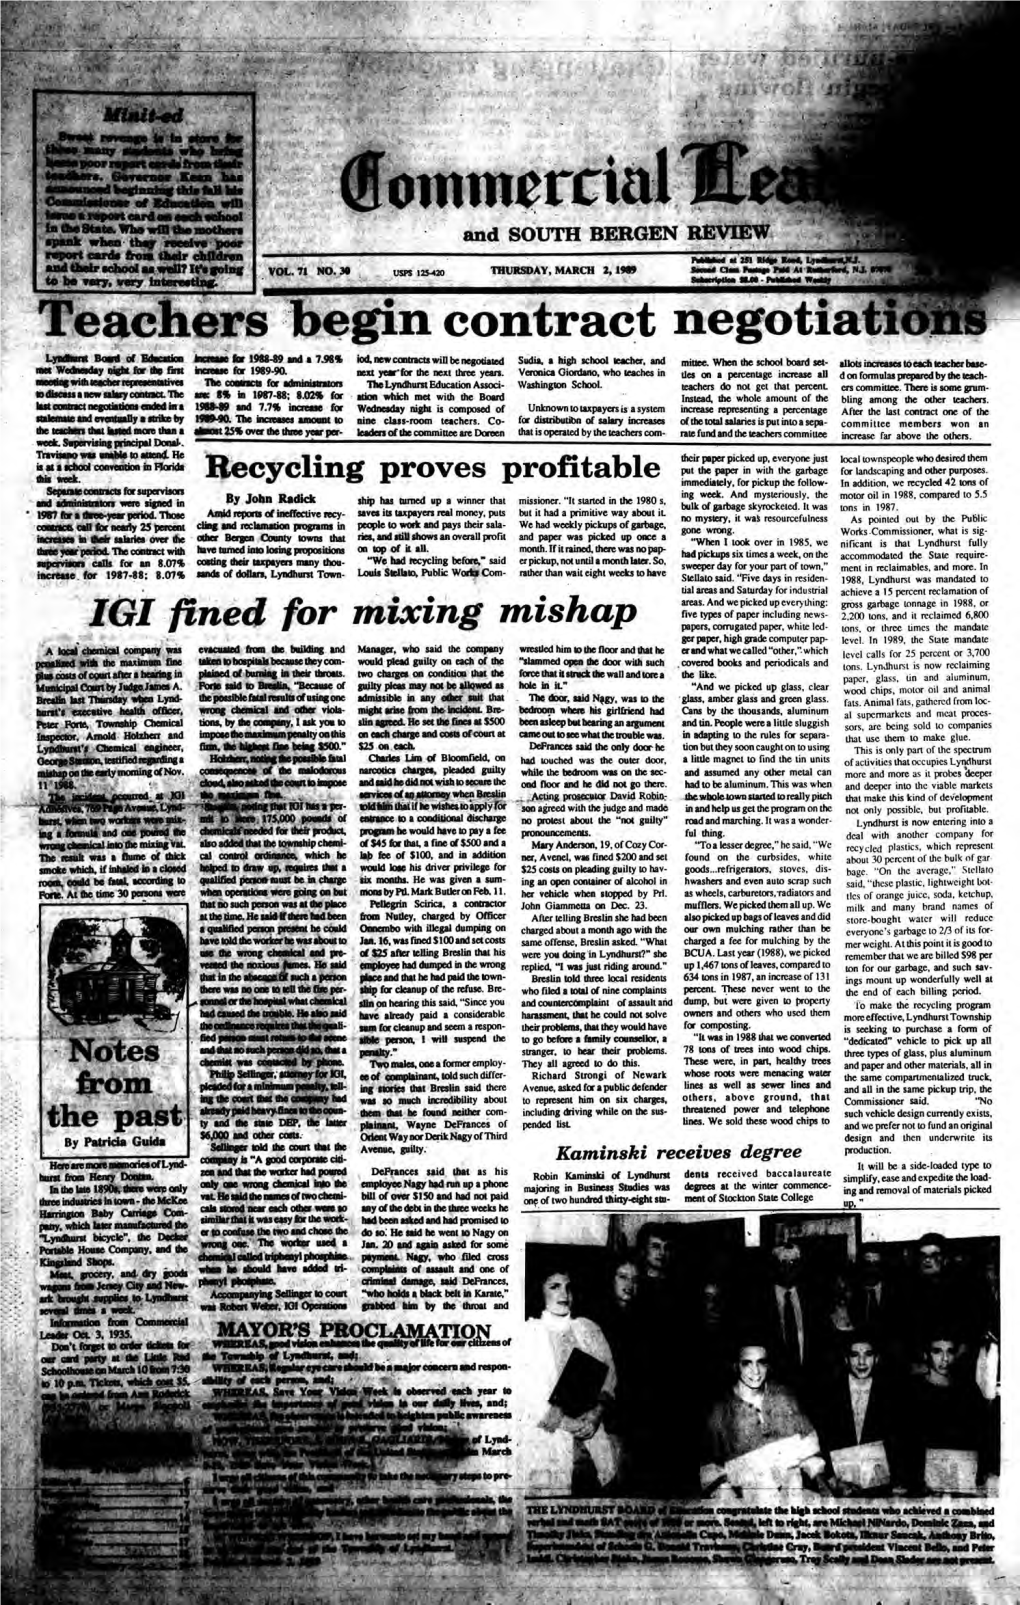 Teachers Begin Contract Negotiation